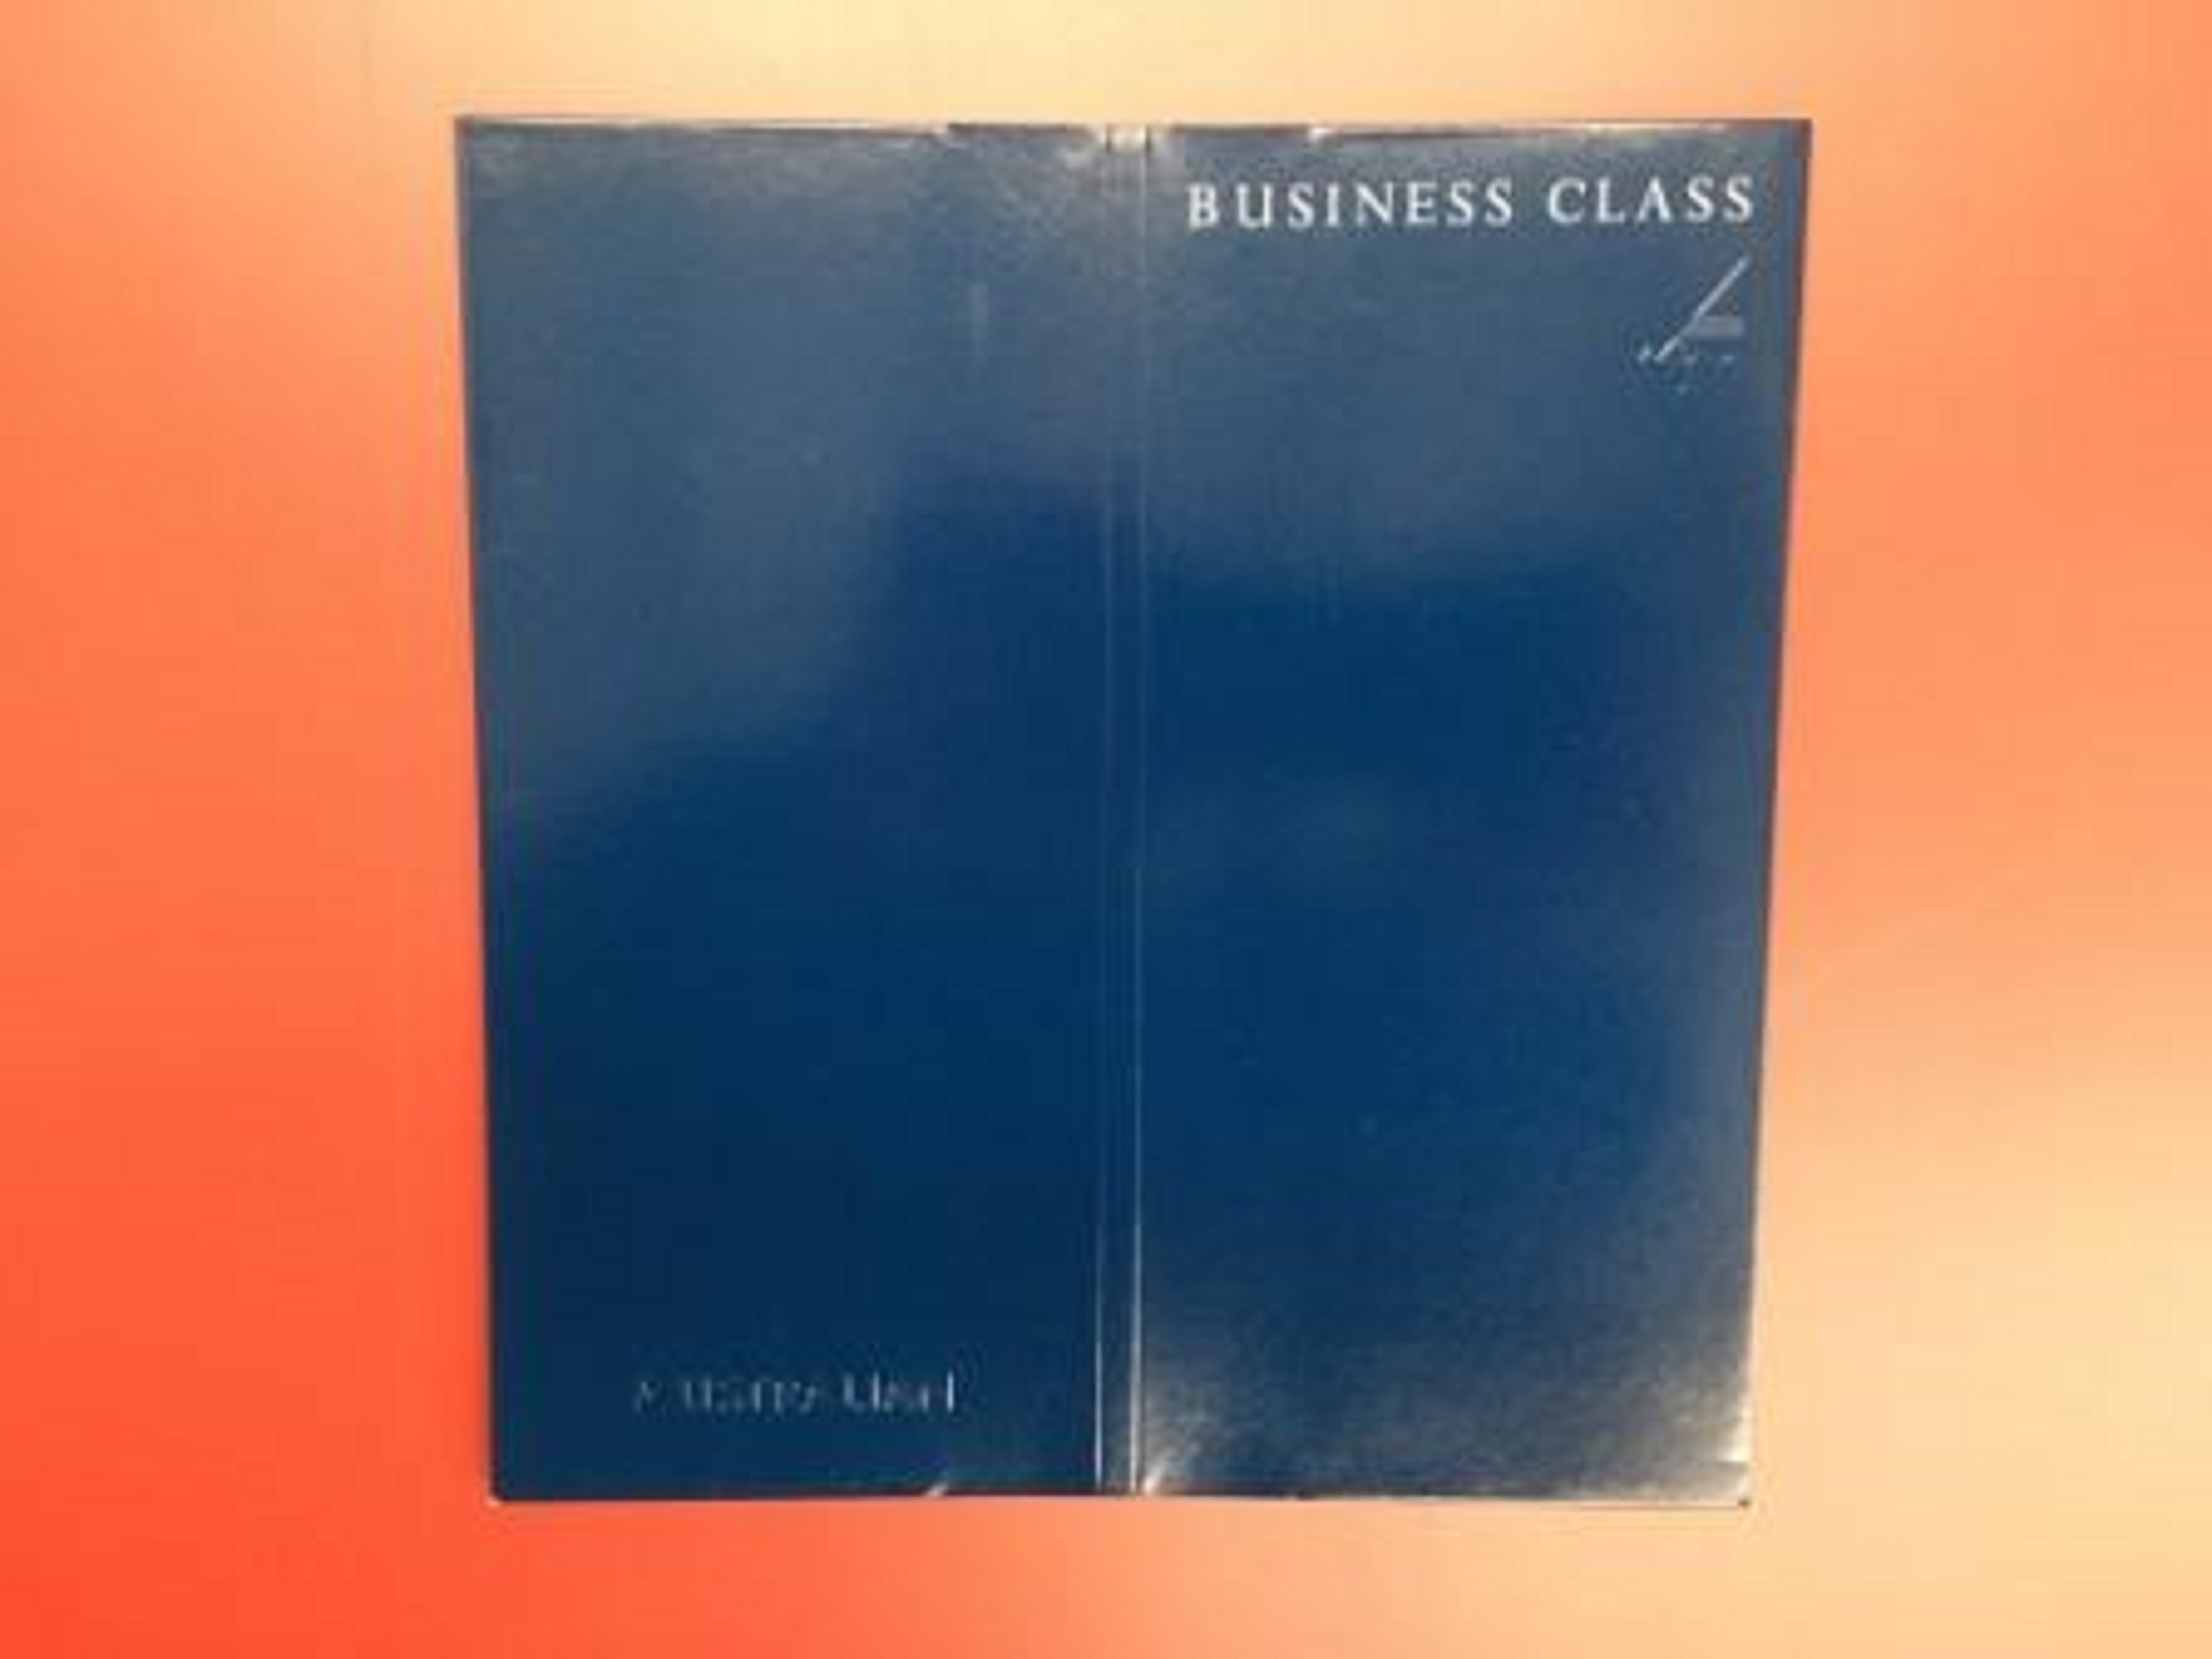 BUSINESS CLASS TICKET WALLET